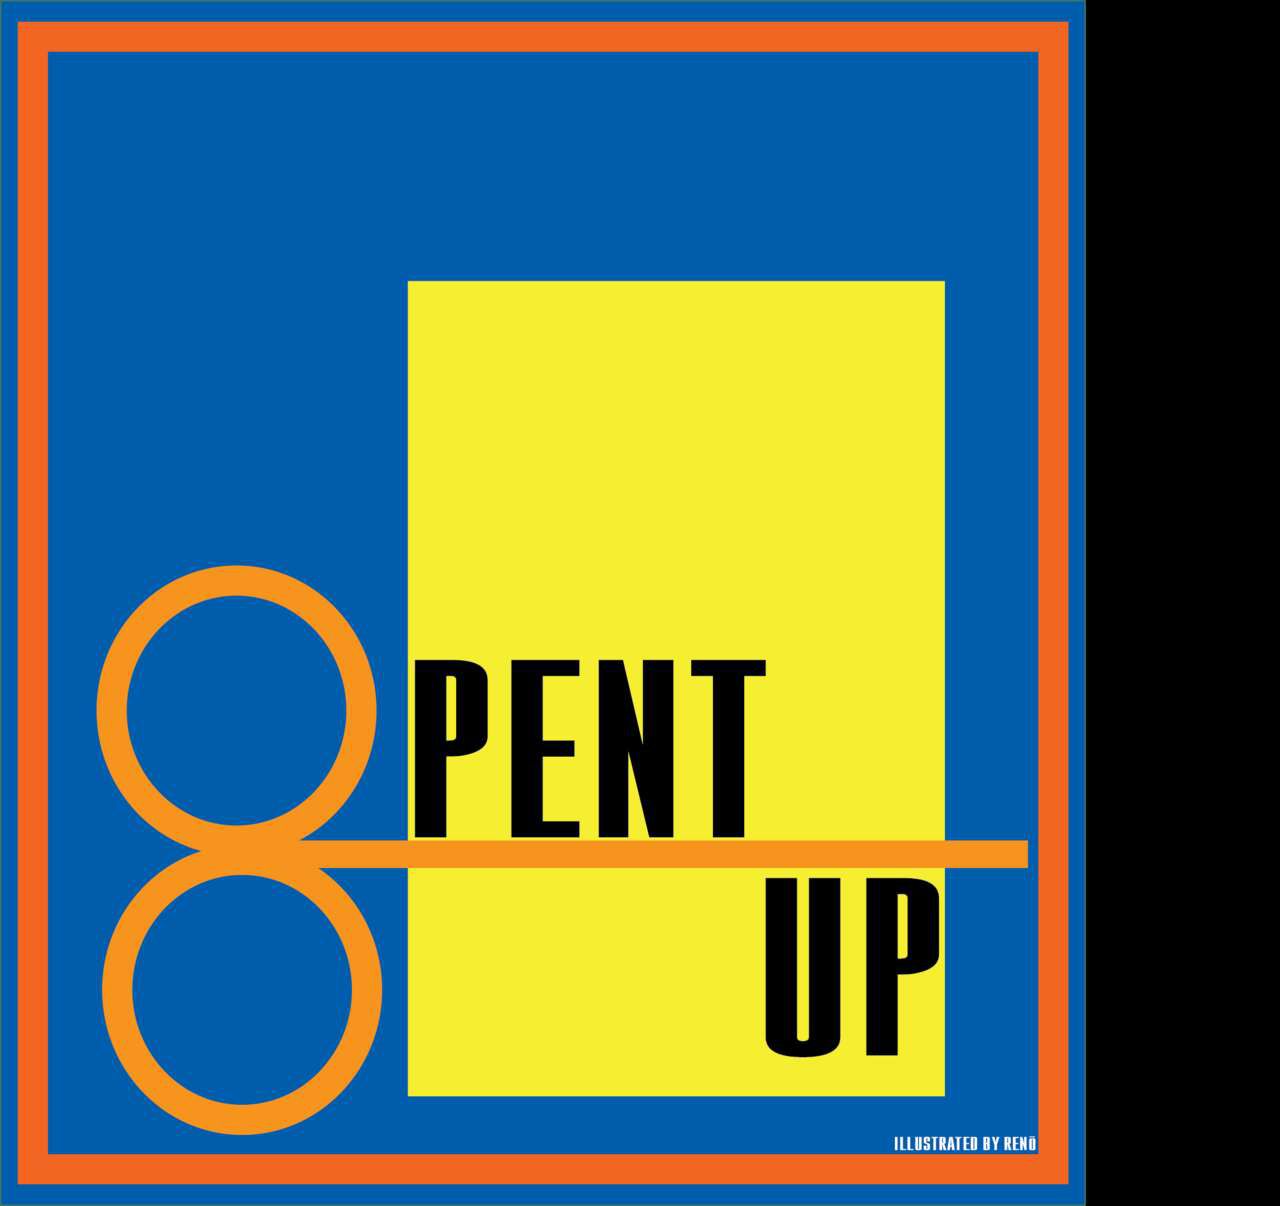 [Renö] Pent Up (Uncensored) 1